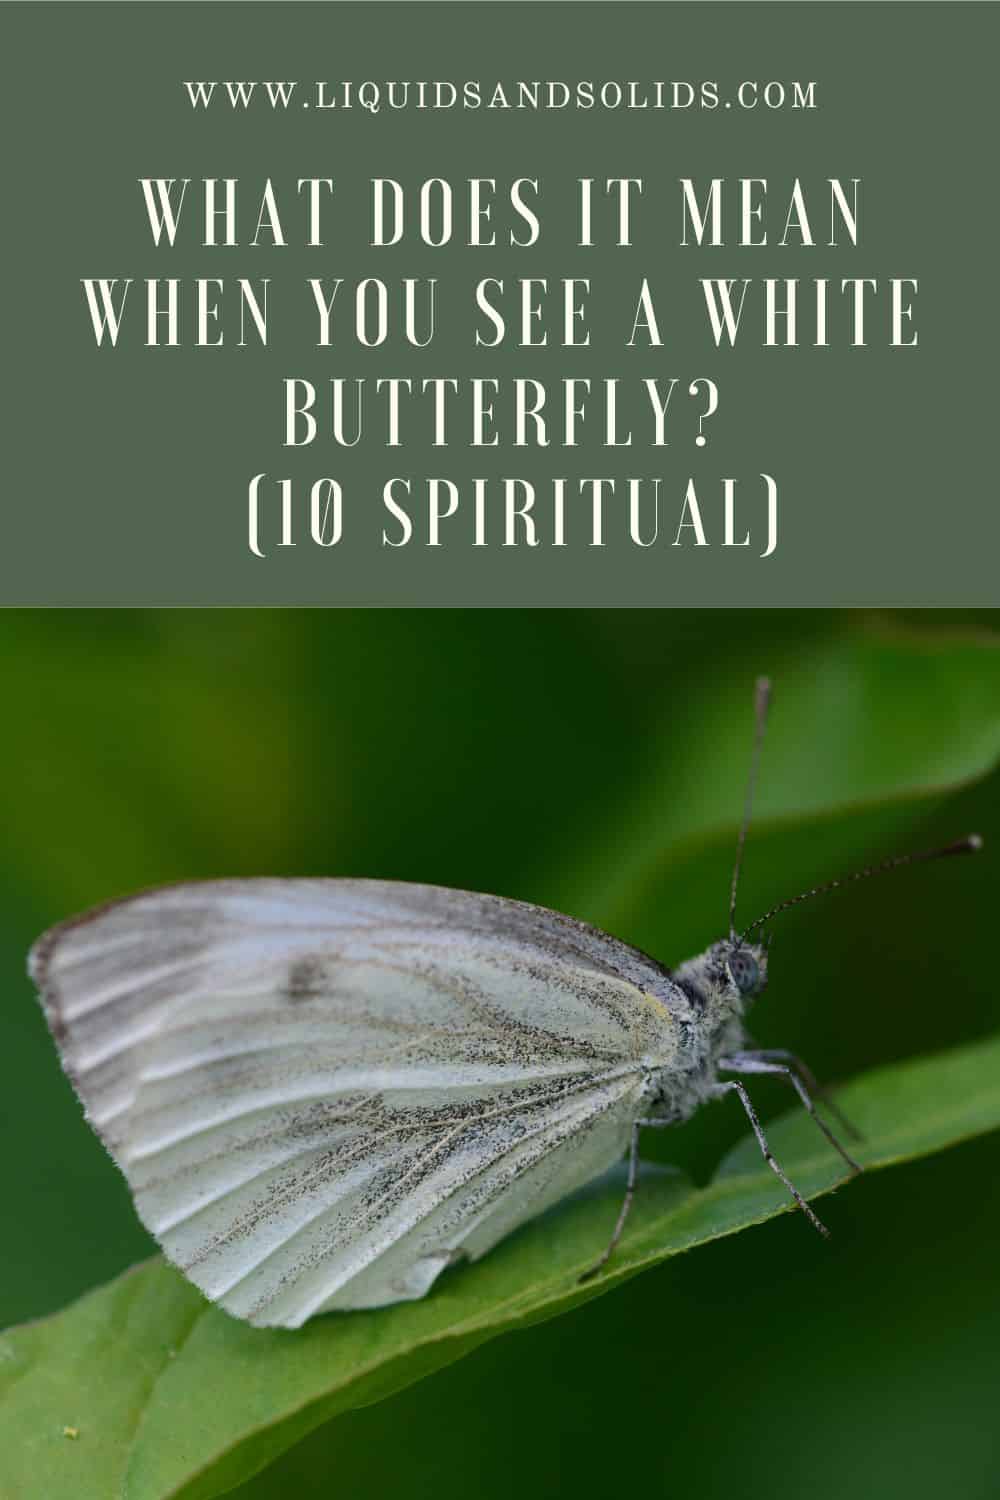  ماذا يعني عندما ترى فراشة بيضاء؟ (10 معاني روحية)